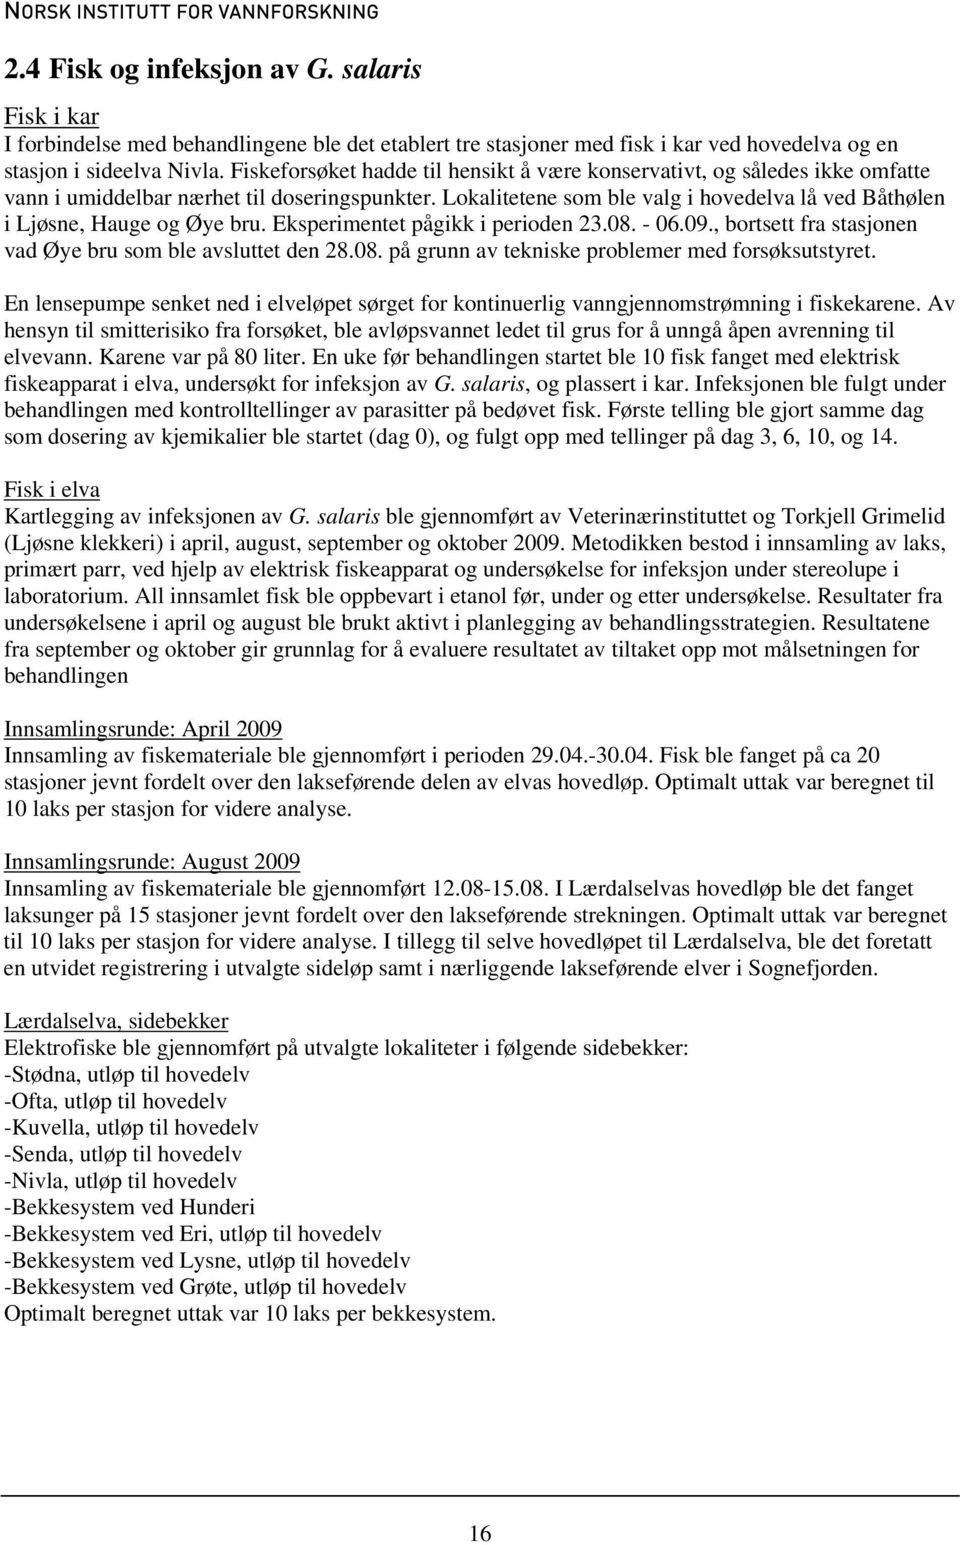 Lokalitetene som ble valg i hovedelva lå ved Båthølen i Ljøsne, Hauge og Øye bru. Eksperimentet pågikk i perioden 23.08. - 06.09., bortsett fra stasjonen vad Øye bru som ble avsluttet den 28.08. på grunn av tekniske problemer med forsøksutstyret.